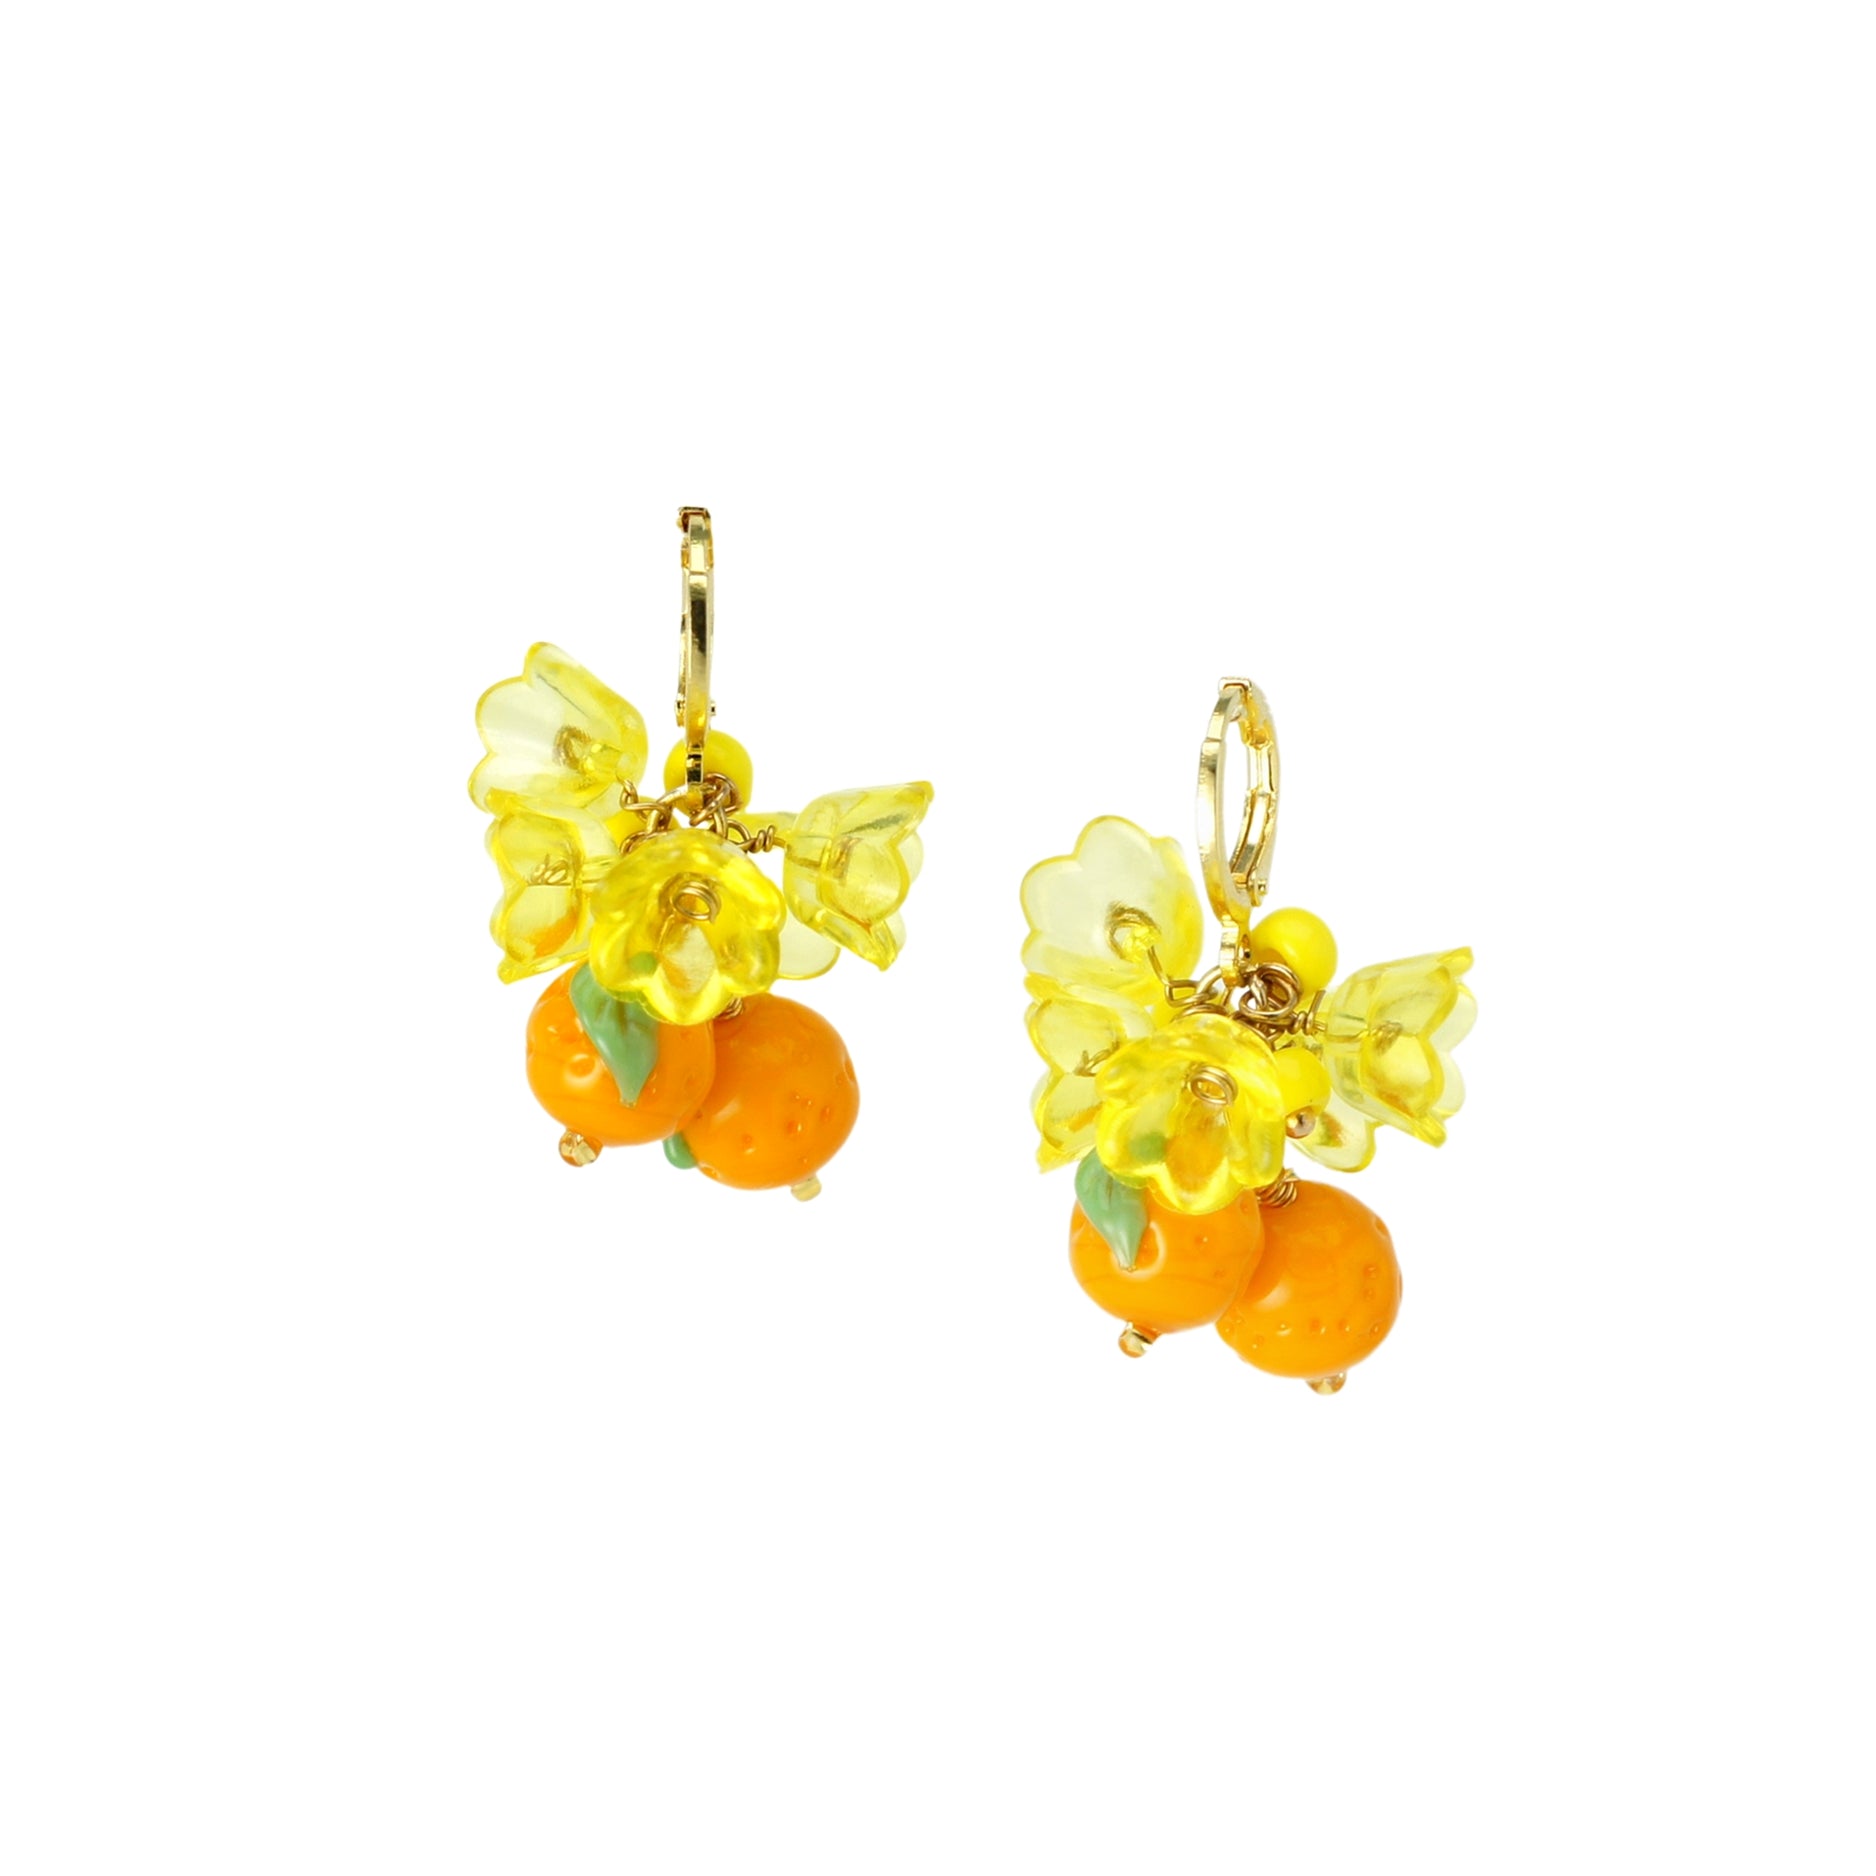 Cutie Pie Lampwork Glass Tangerine and Flower Drop Earrings